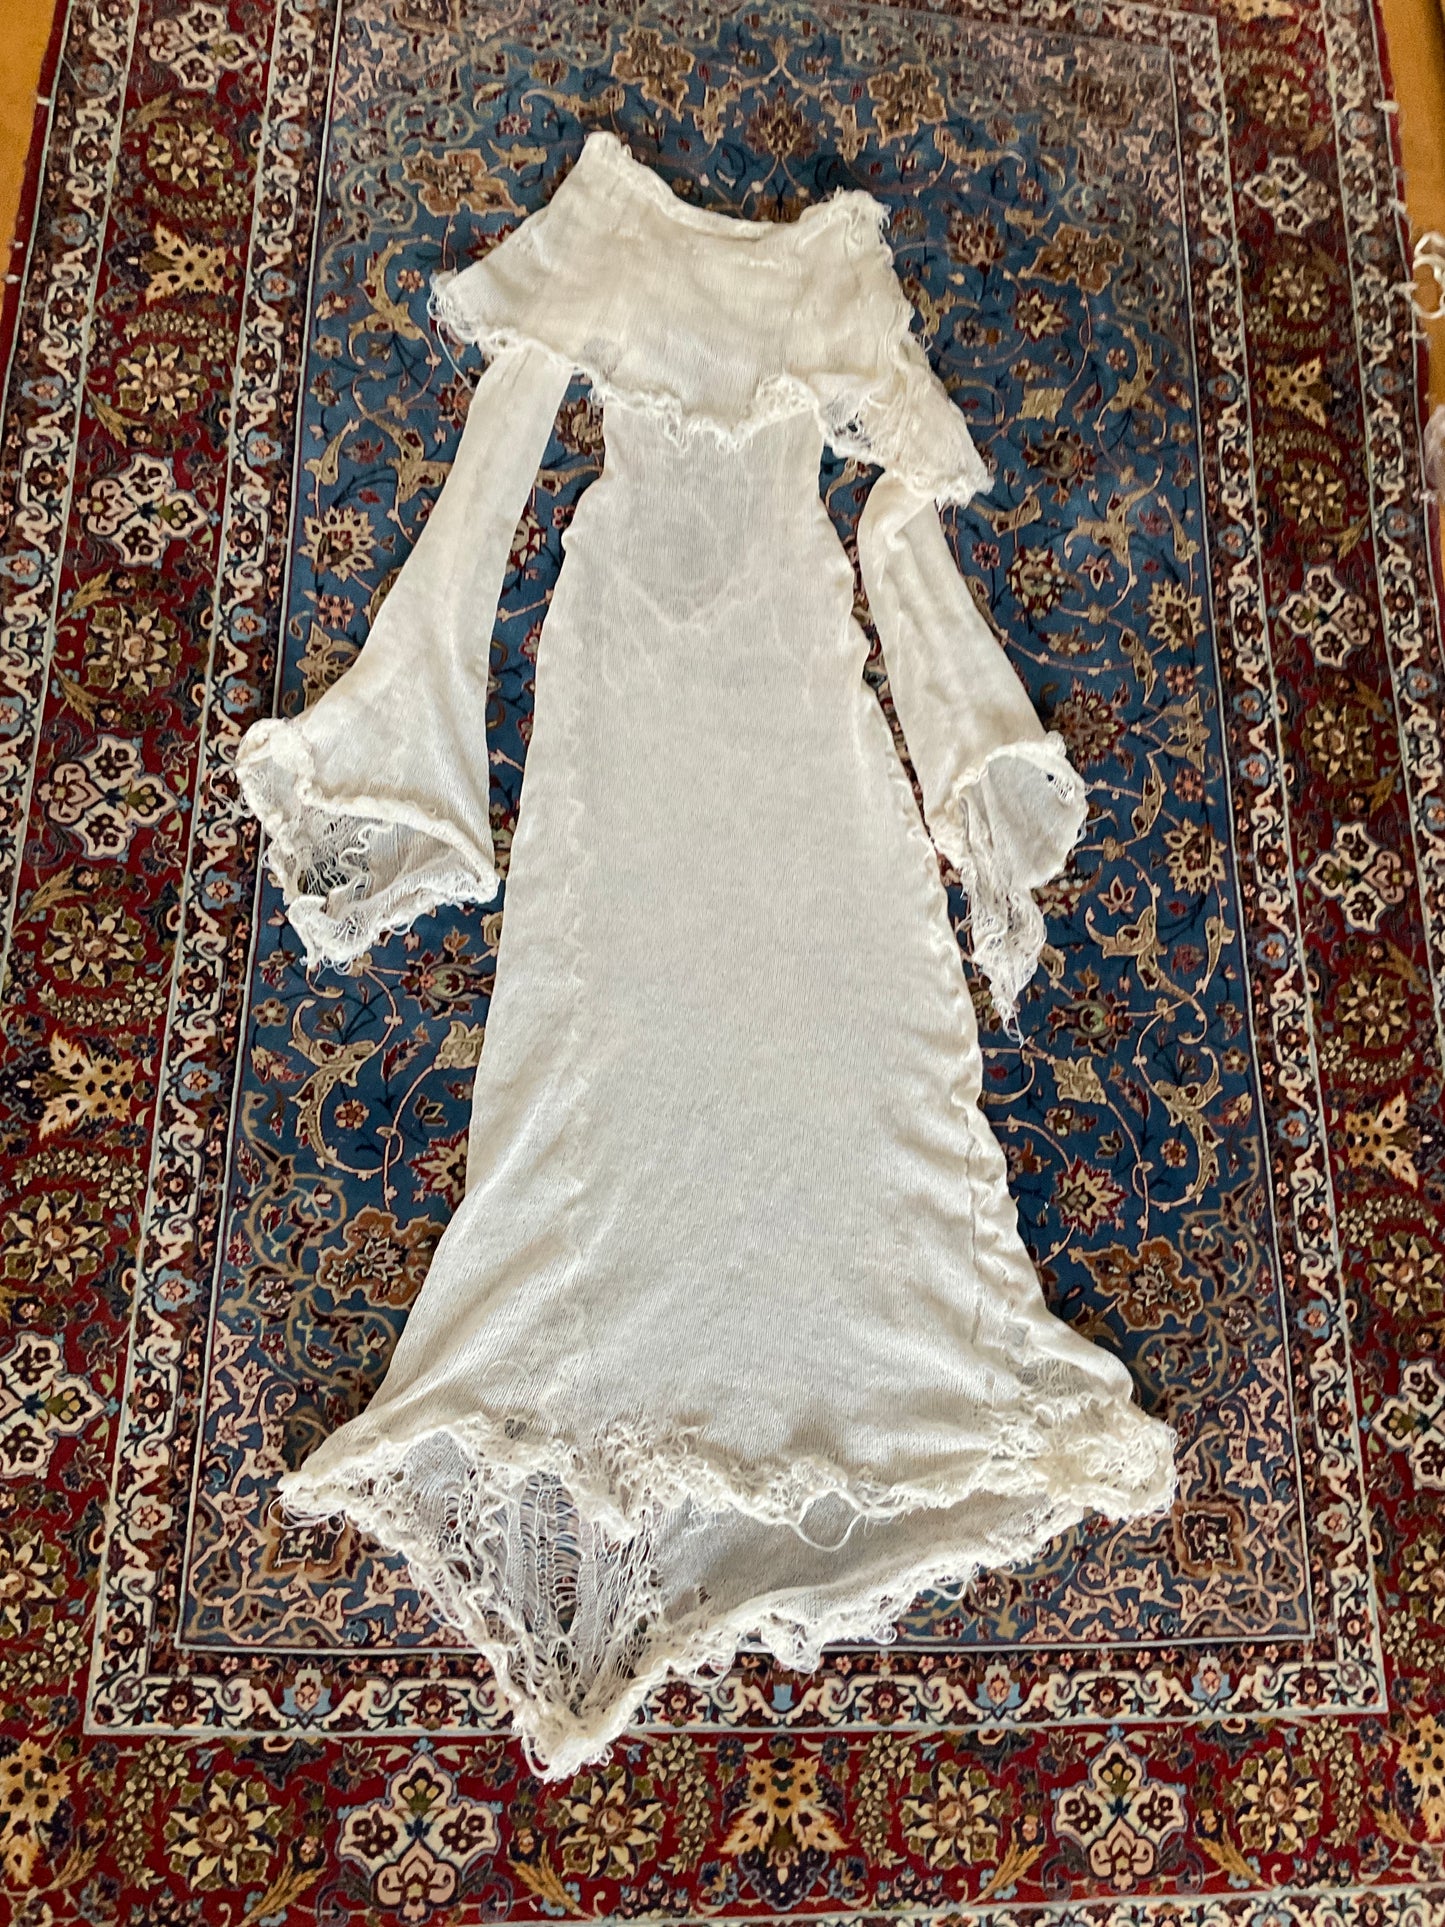 gargarox - Angel dress